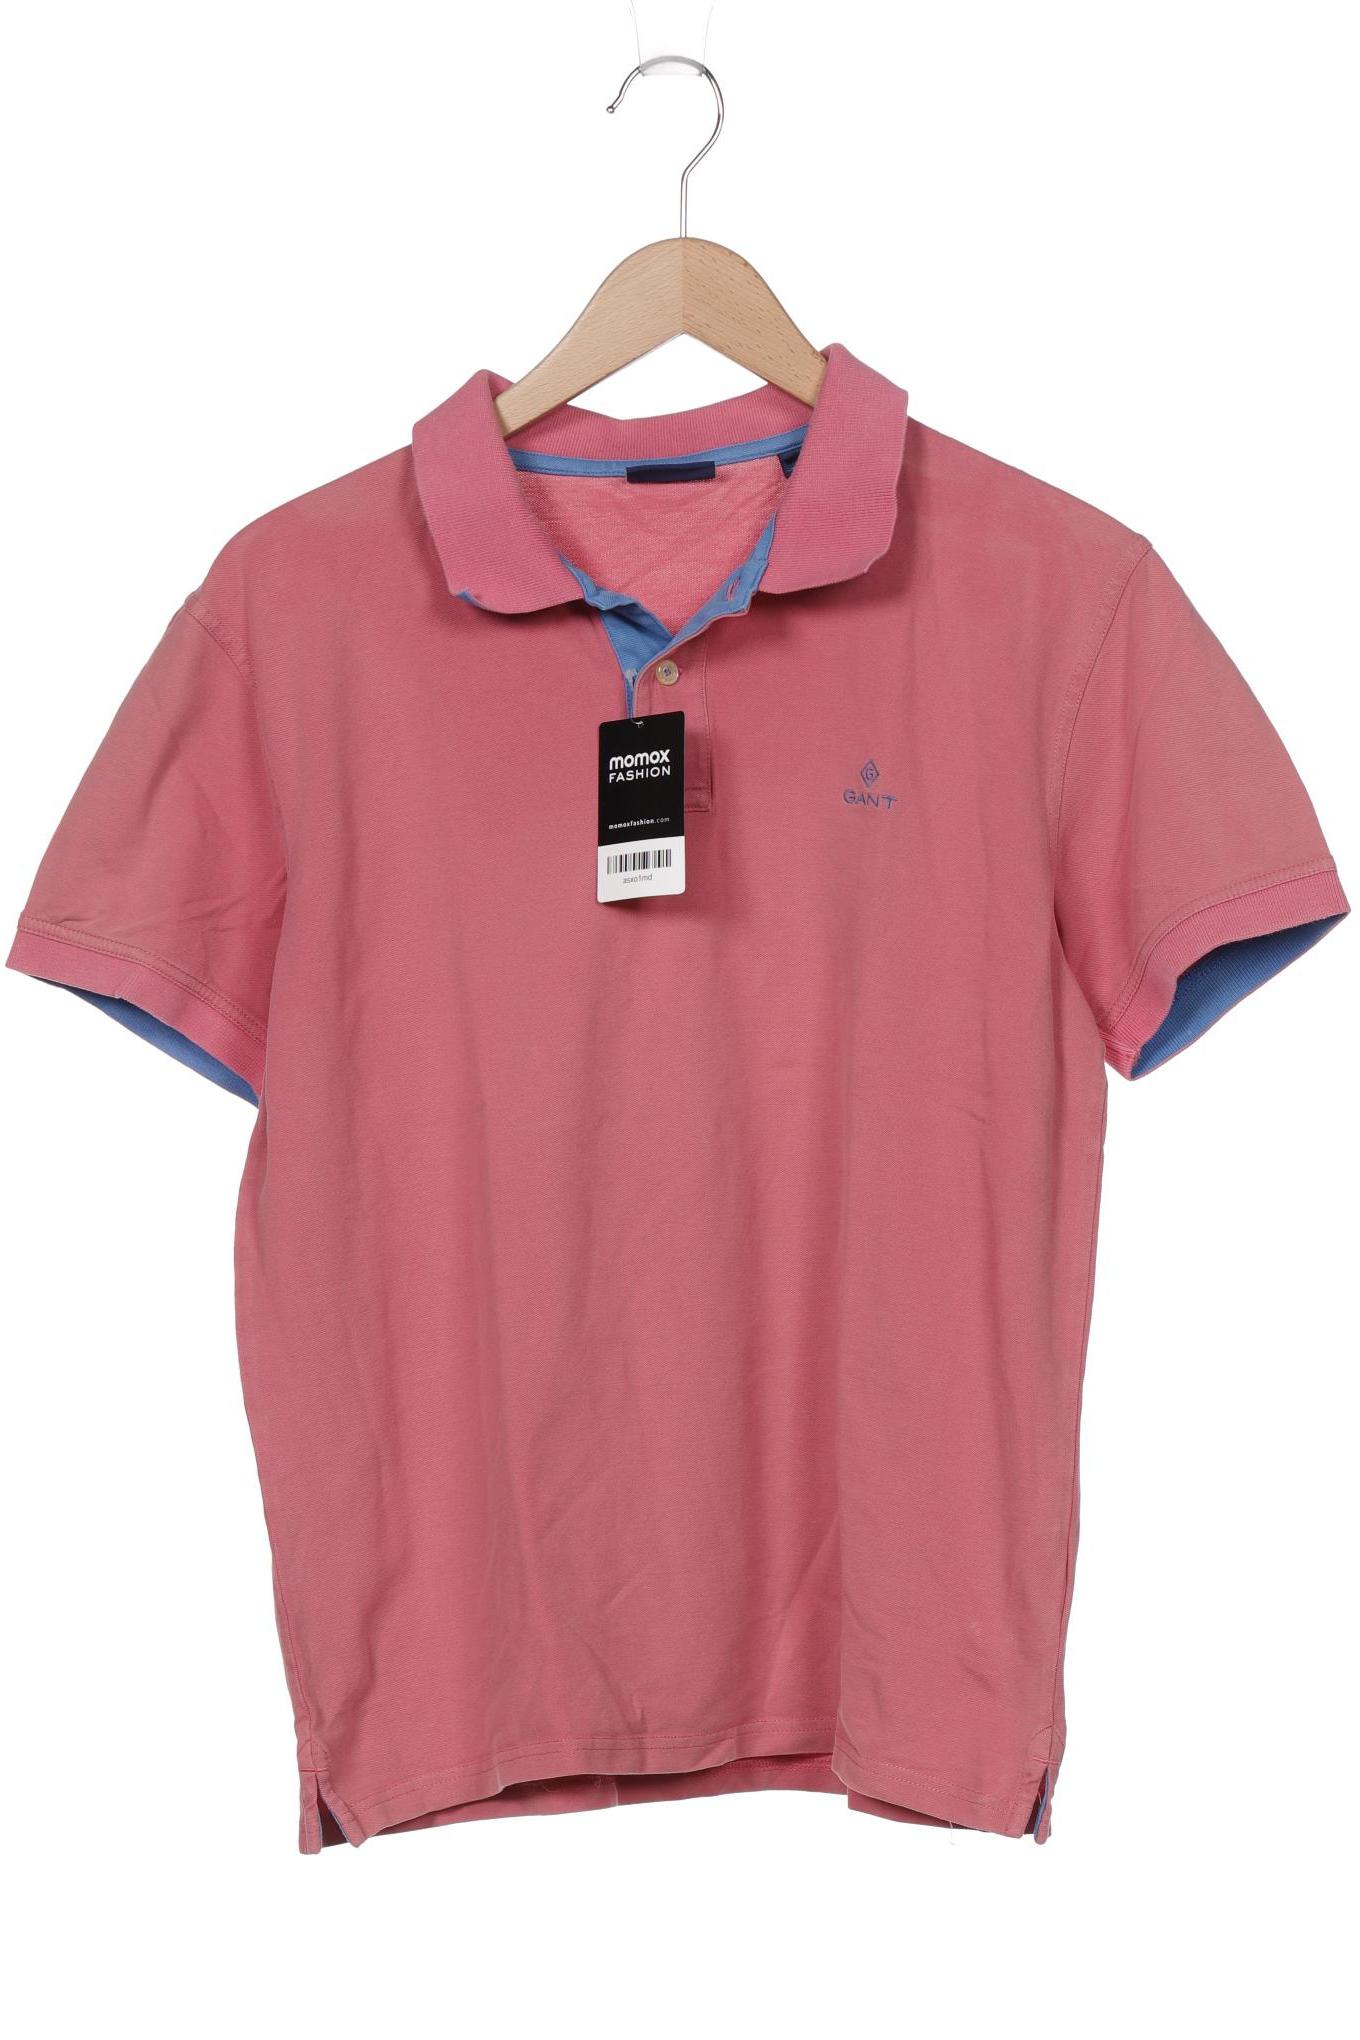 GANT Herren Poloshirt, pink von Gant